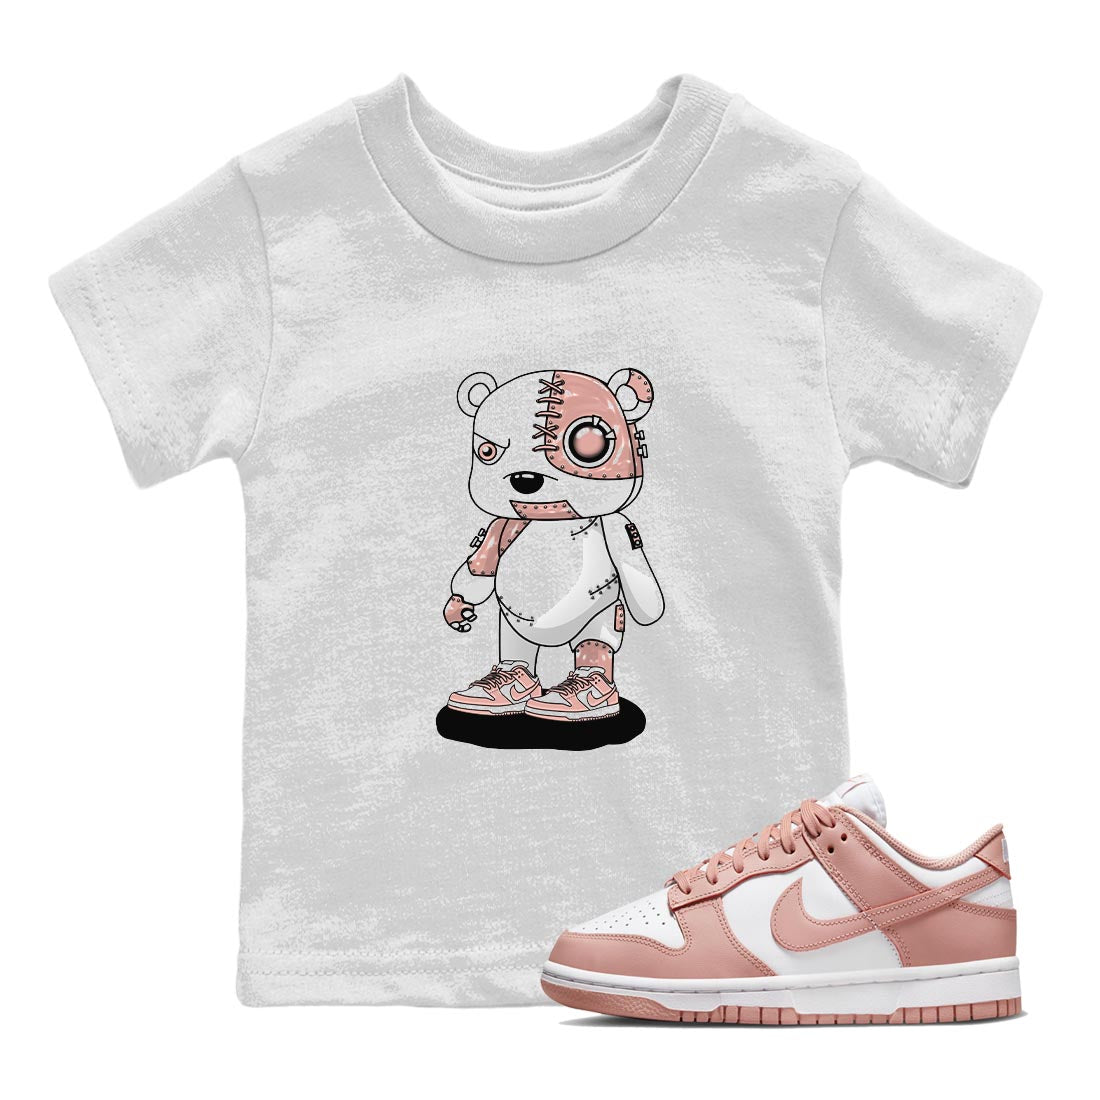 Nike Dunks Low Rose Whisper shirt to match jordans Cyborg Bear Streetwear Sneaker Shirt Nike Dunk Rose Whisper Drip Gear Zone Sneaker Matching Clothing Baby Toddler White 1 T-Shirt